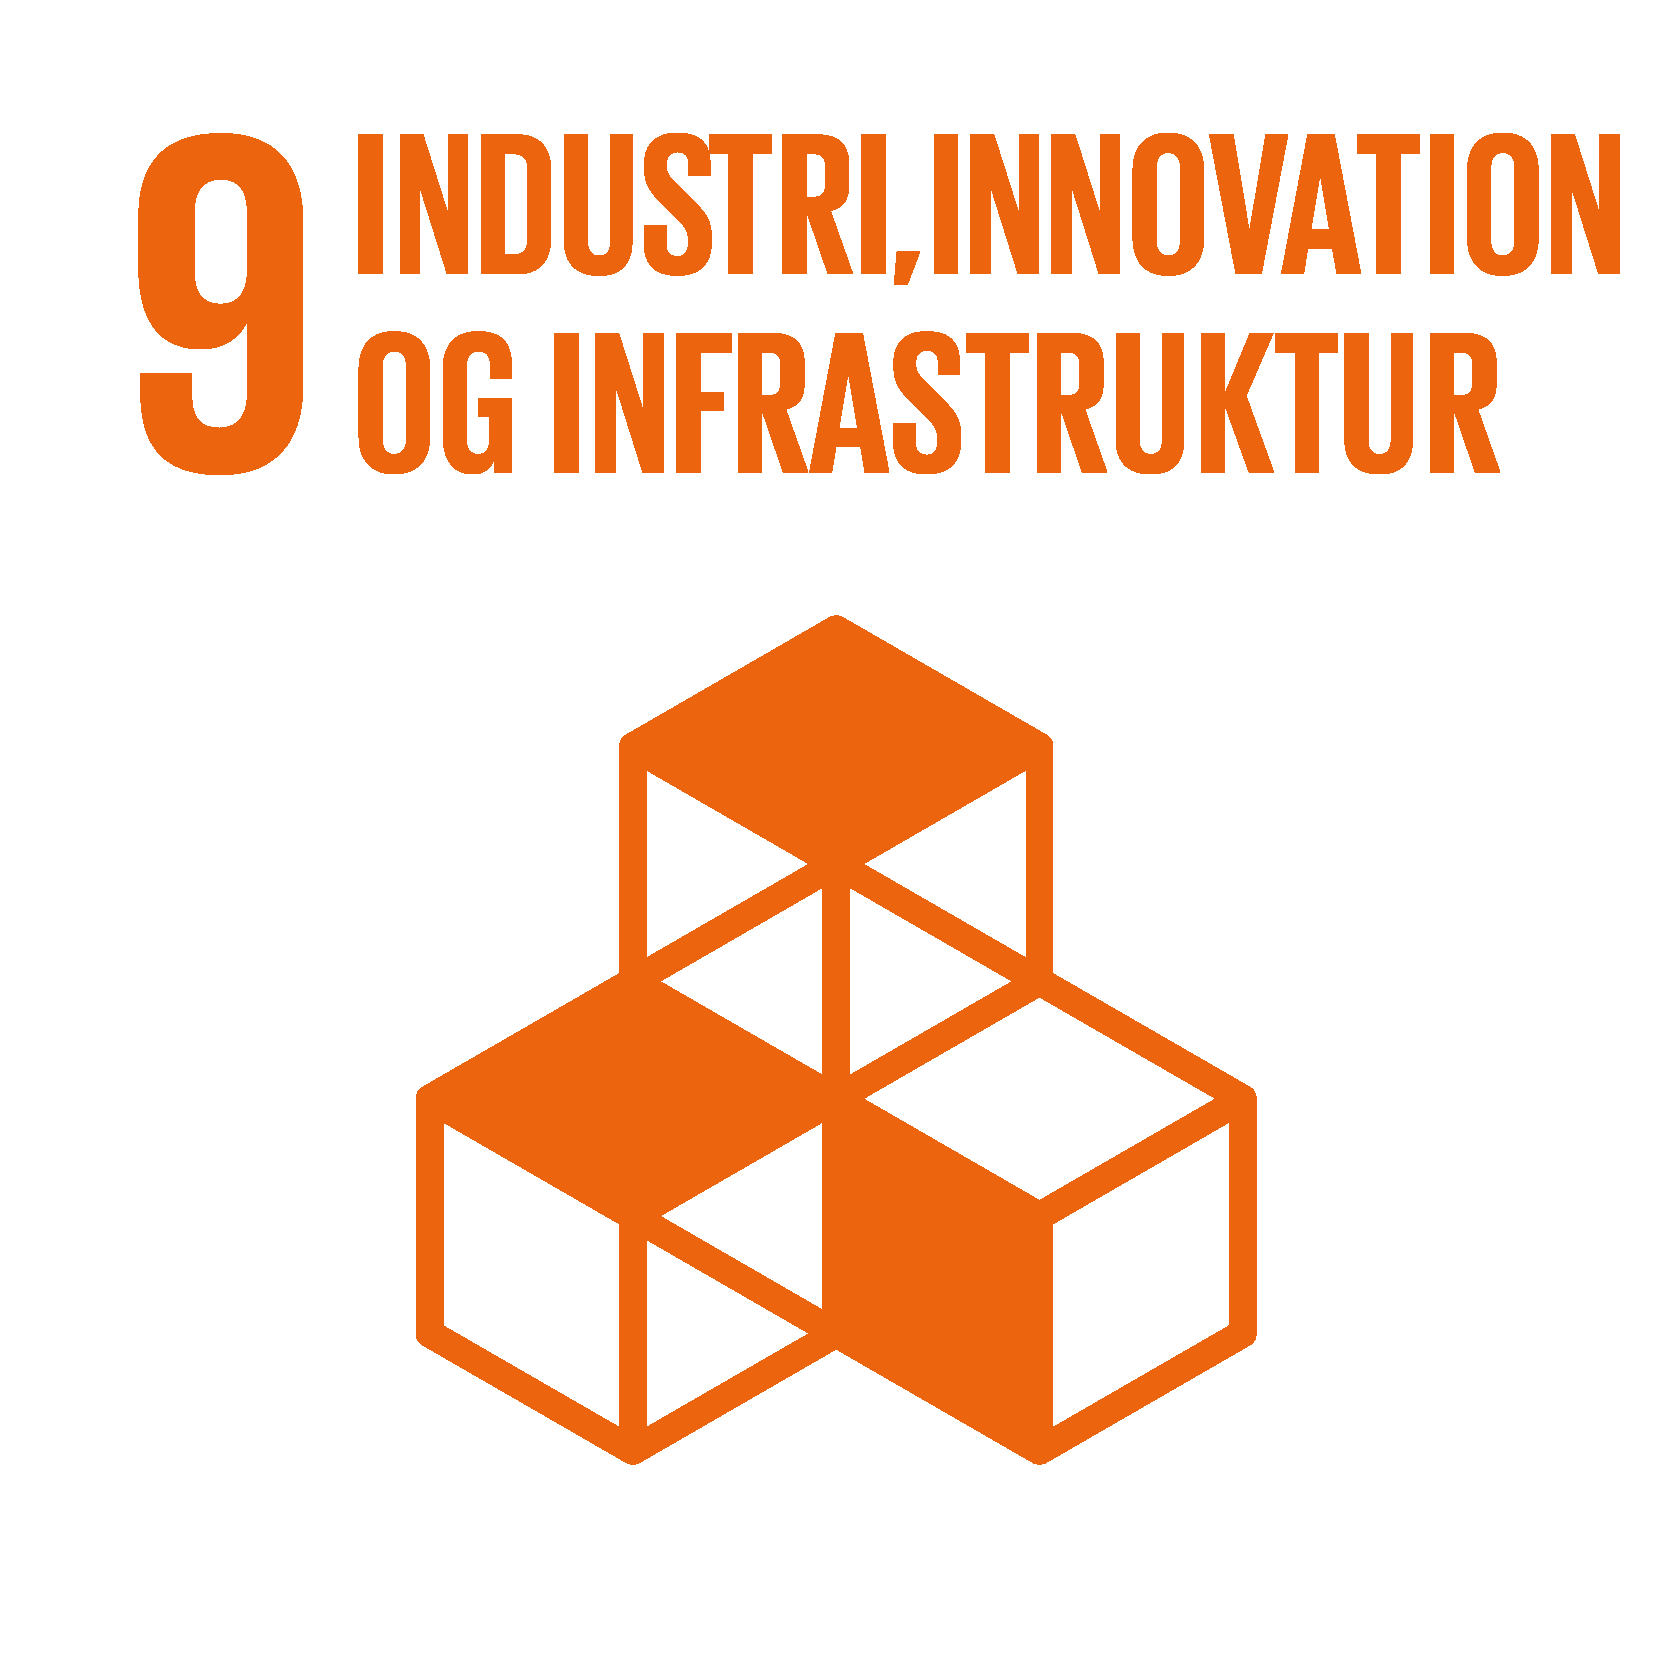 Industri, innovation og infrastruktur